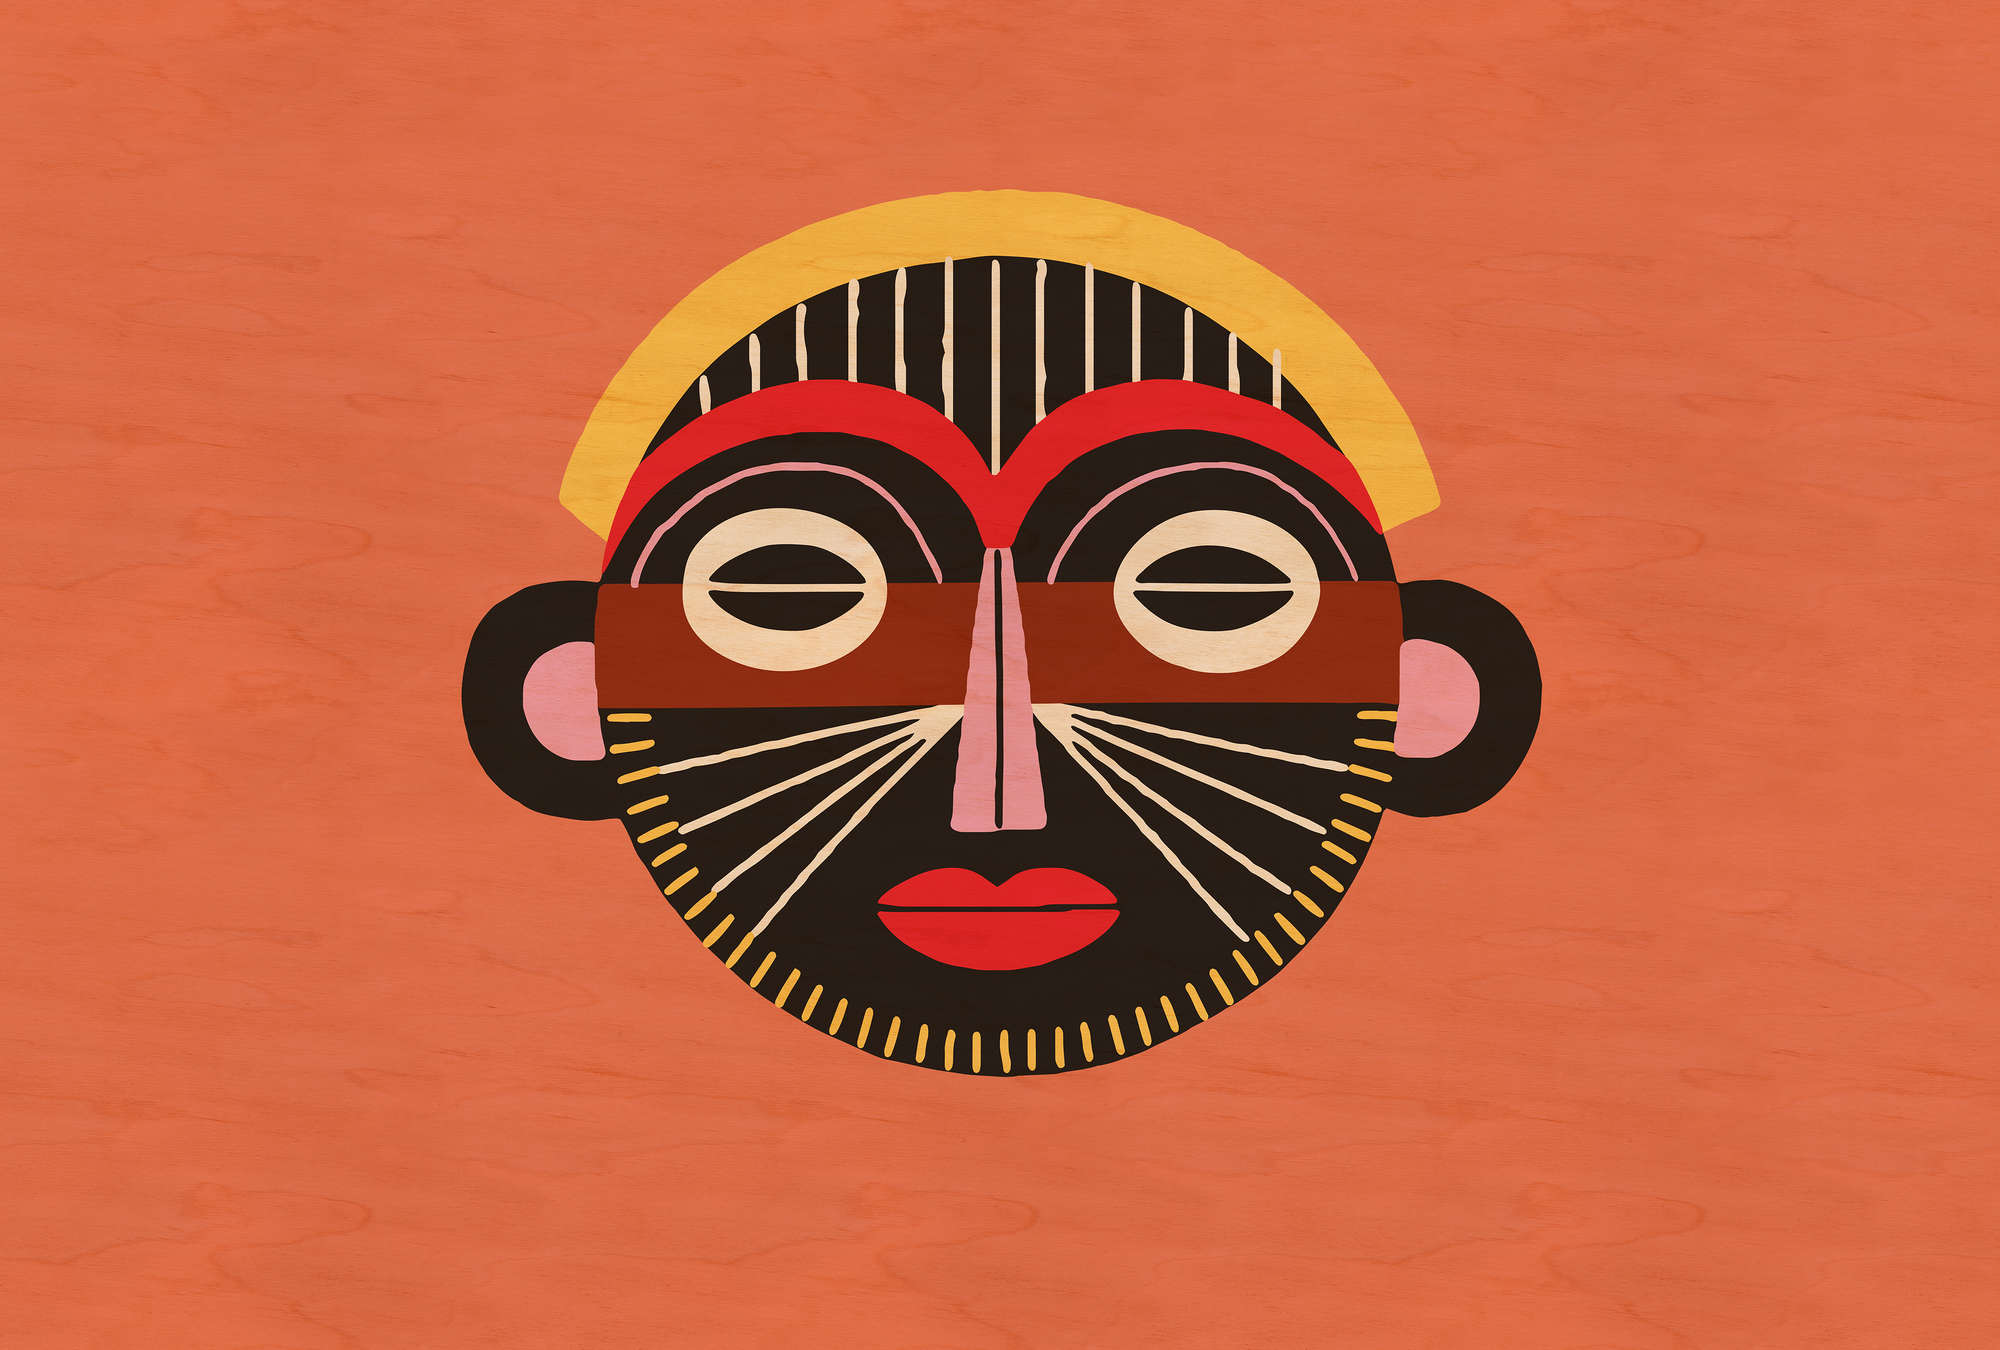             Overseas 2 - Papier peint ethnique Masque au design tribal
        